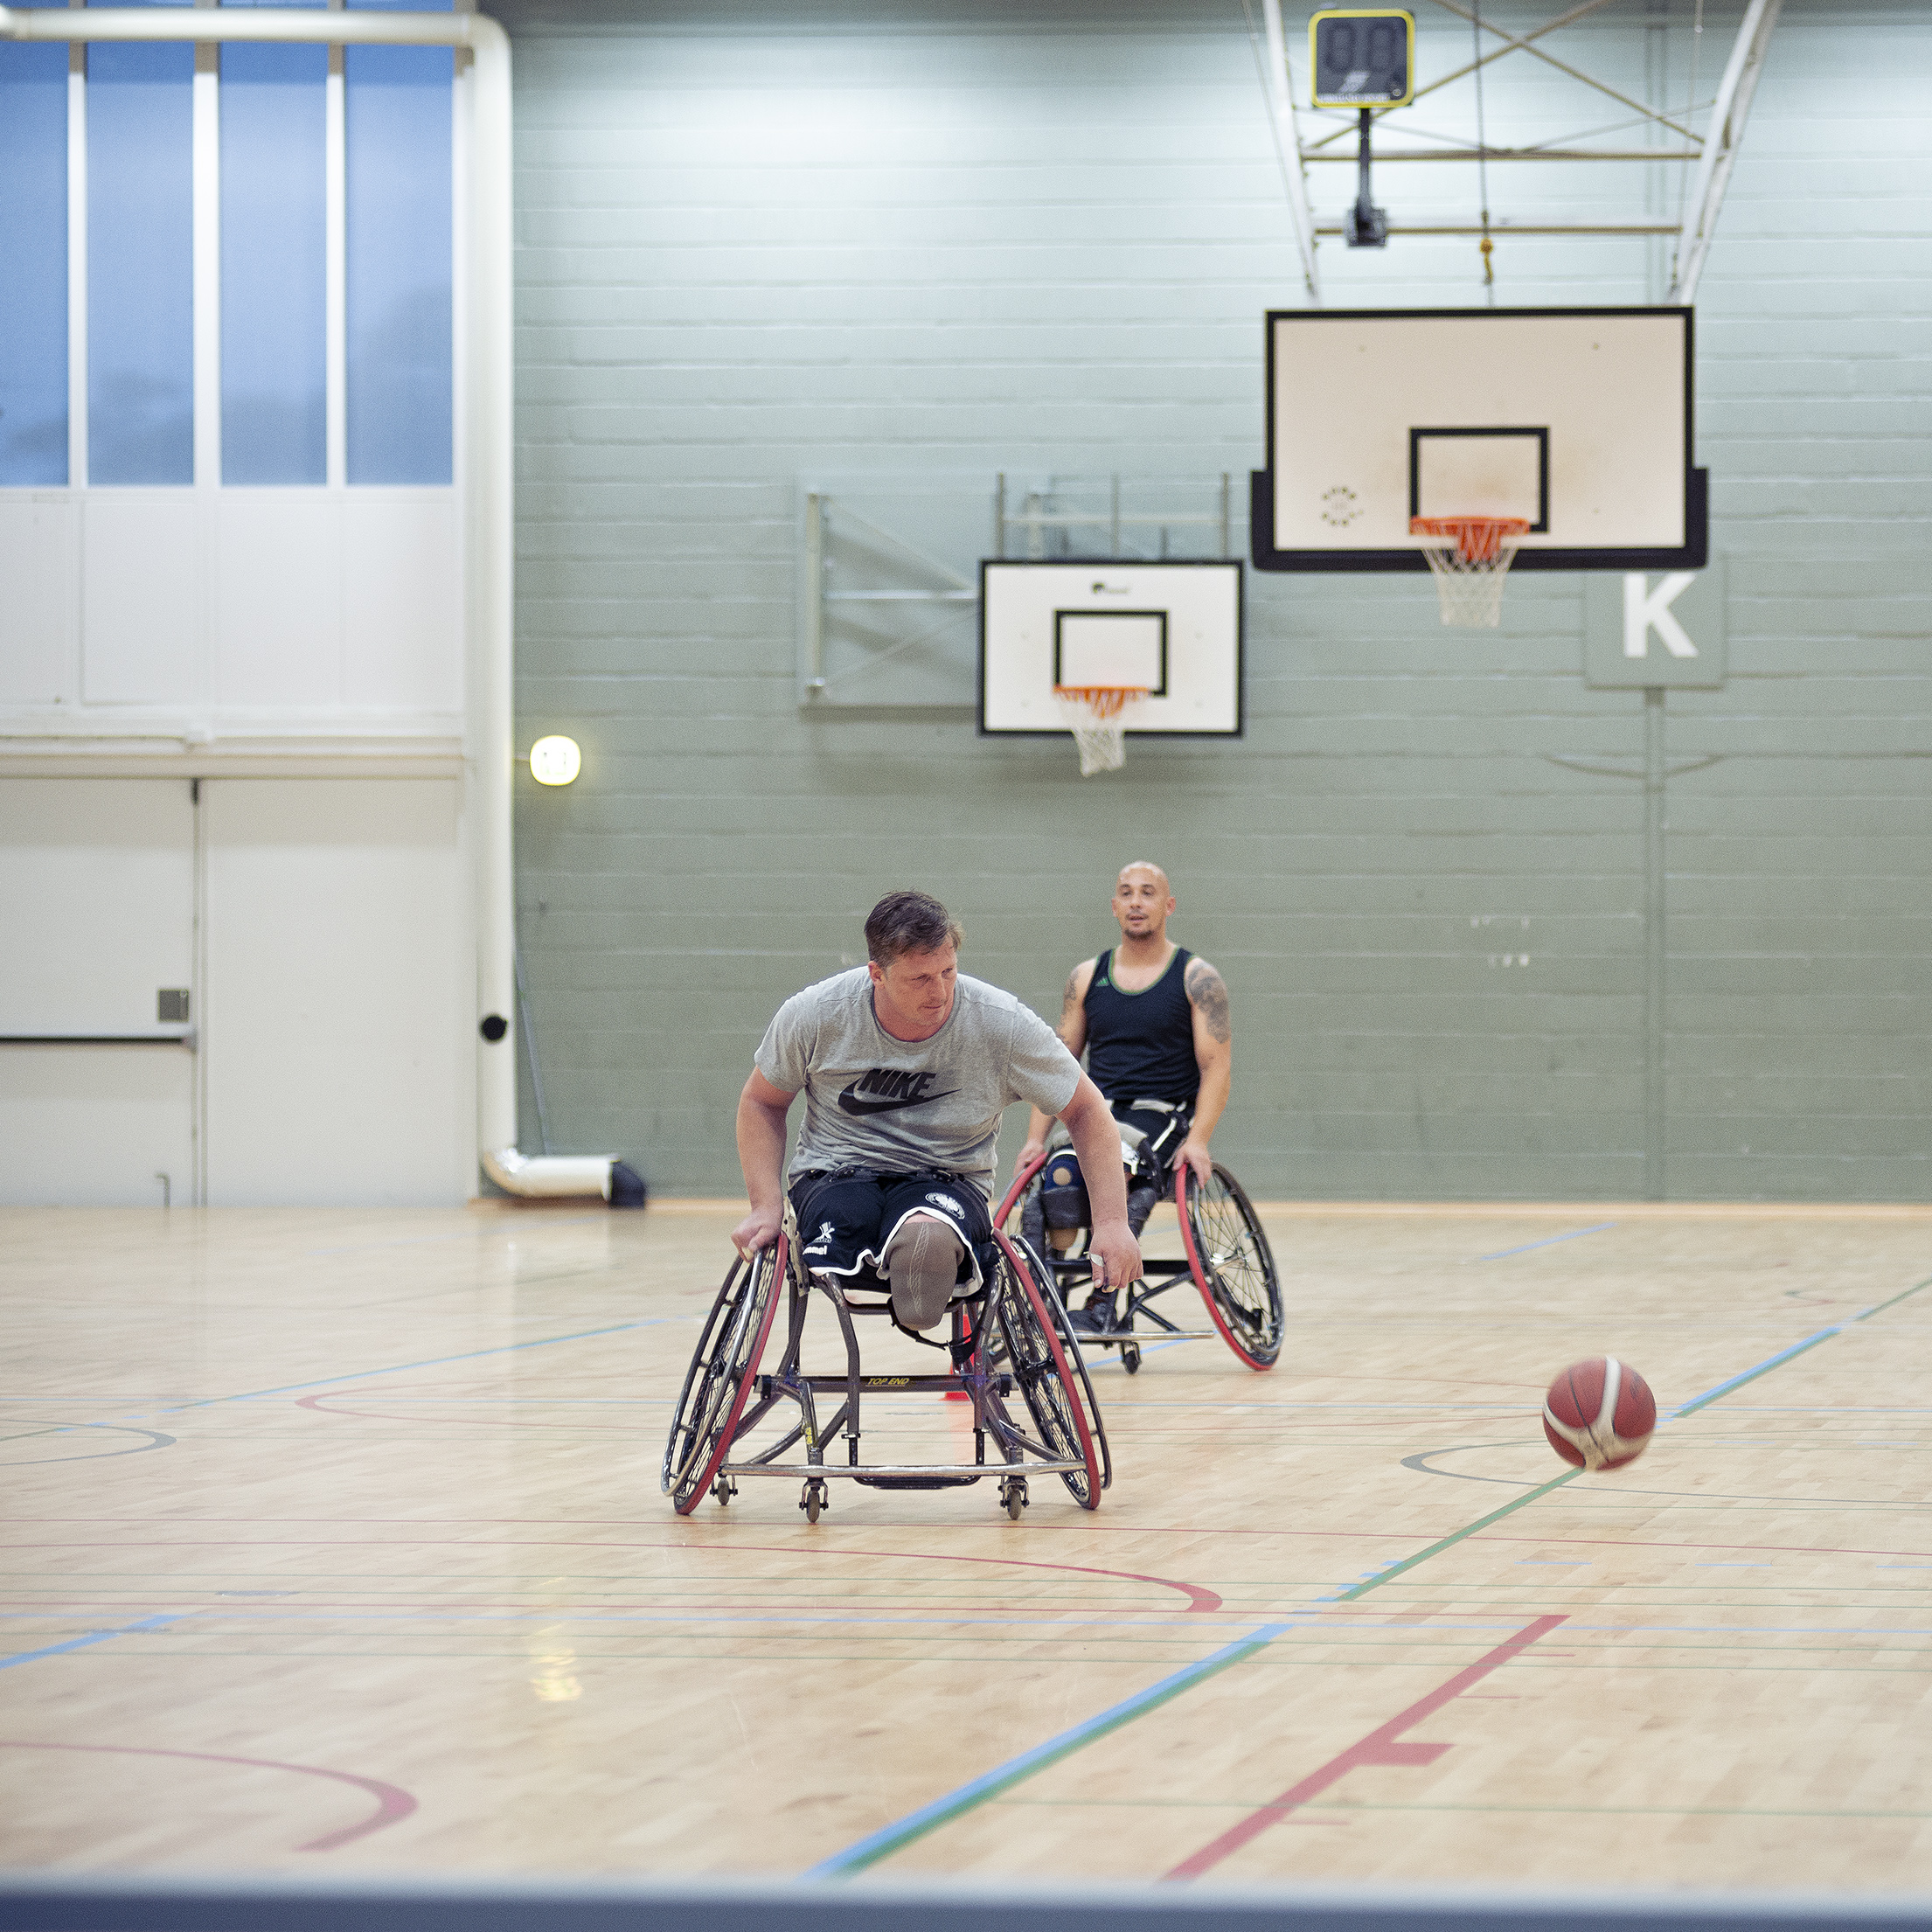 Kørestolsbasket: Mand i kørestol pisker efter bolden